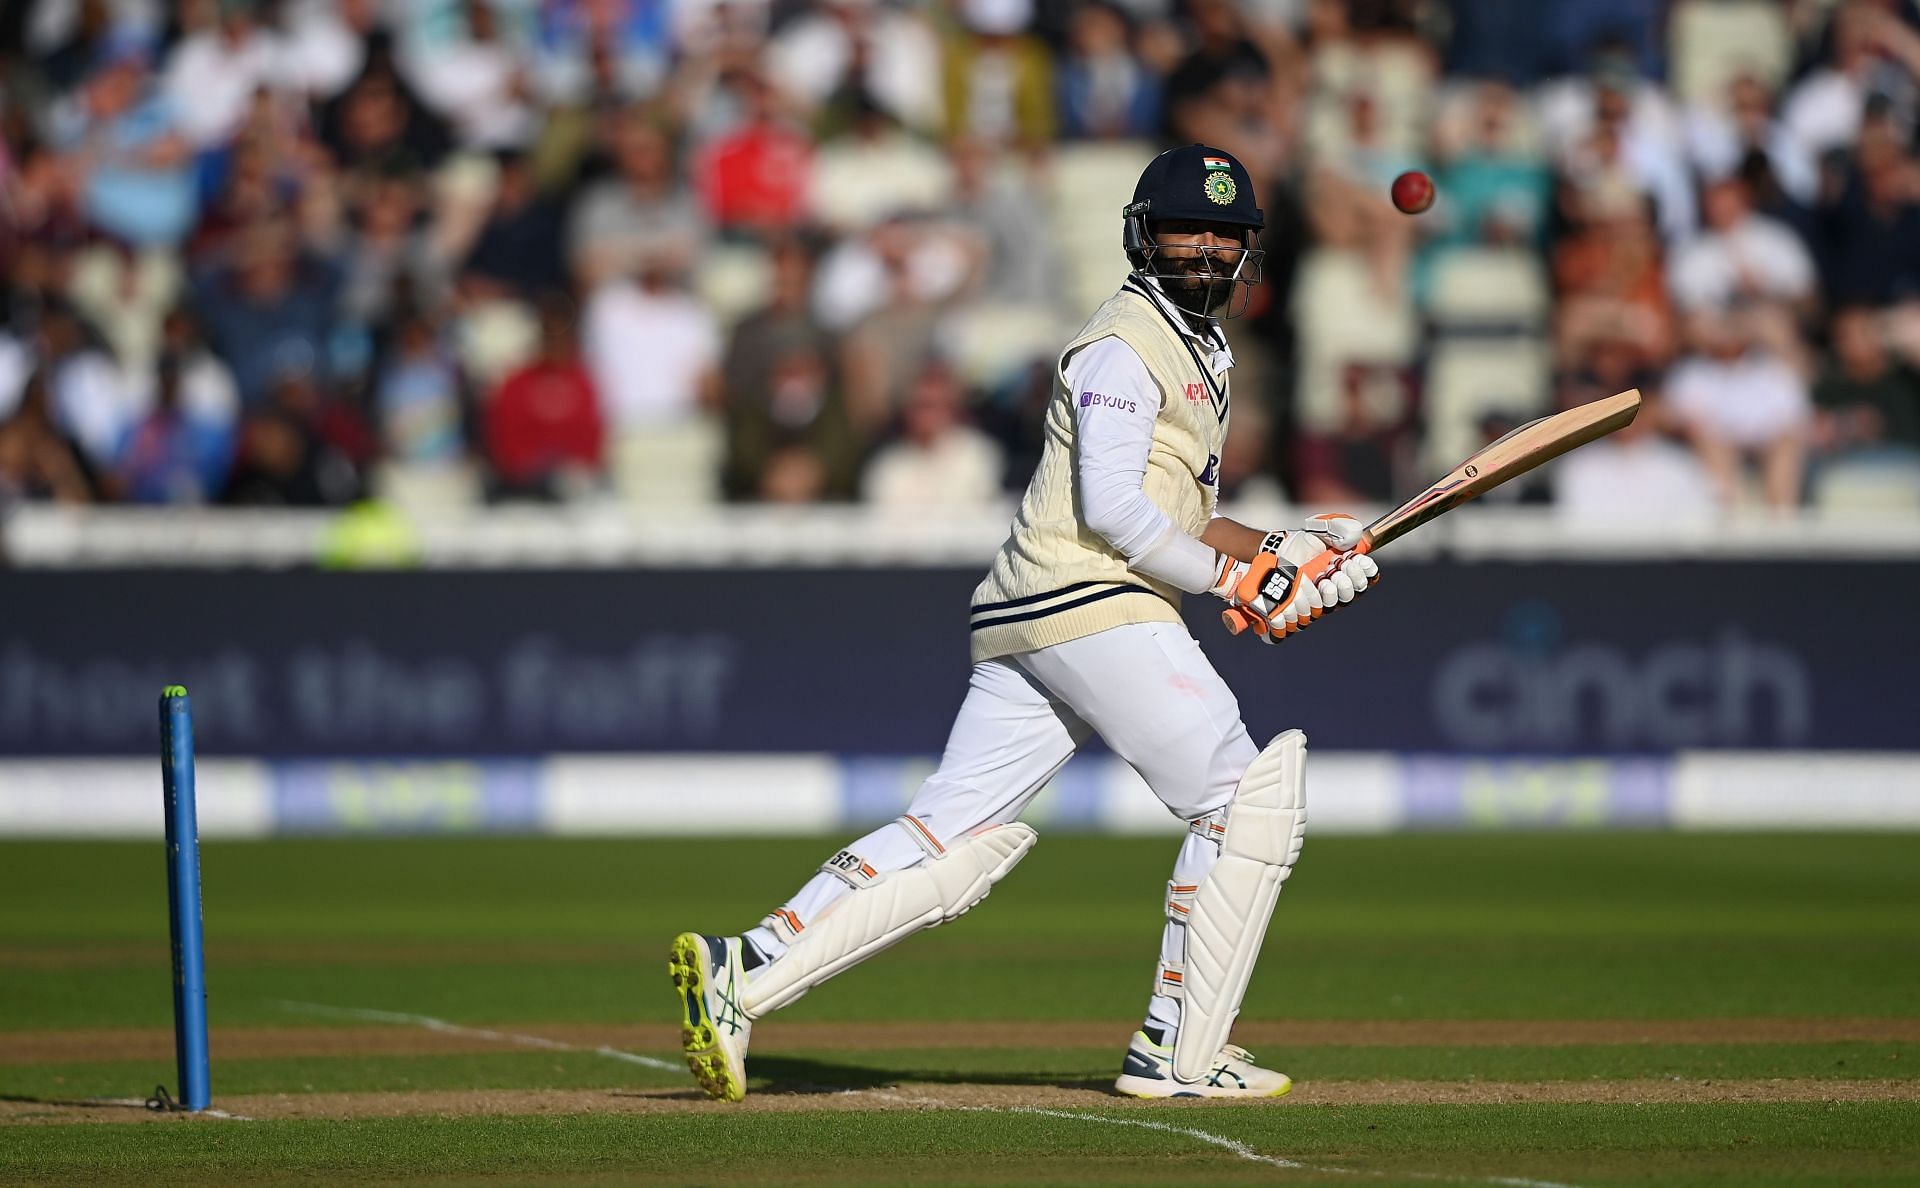 Ravindra Jadeja last played a Test against England. (Image Credits: Getty)